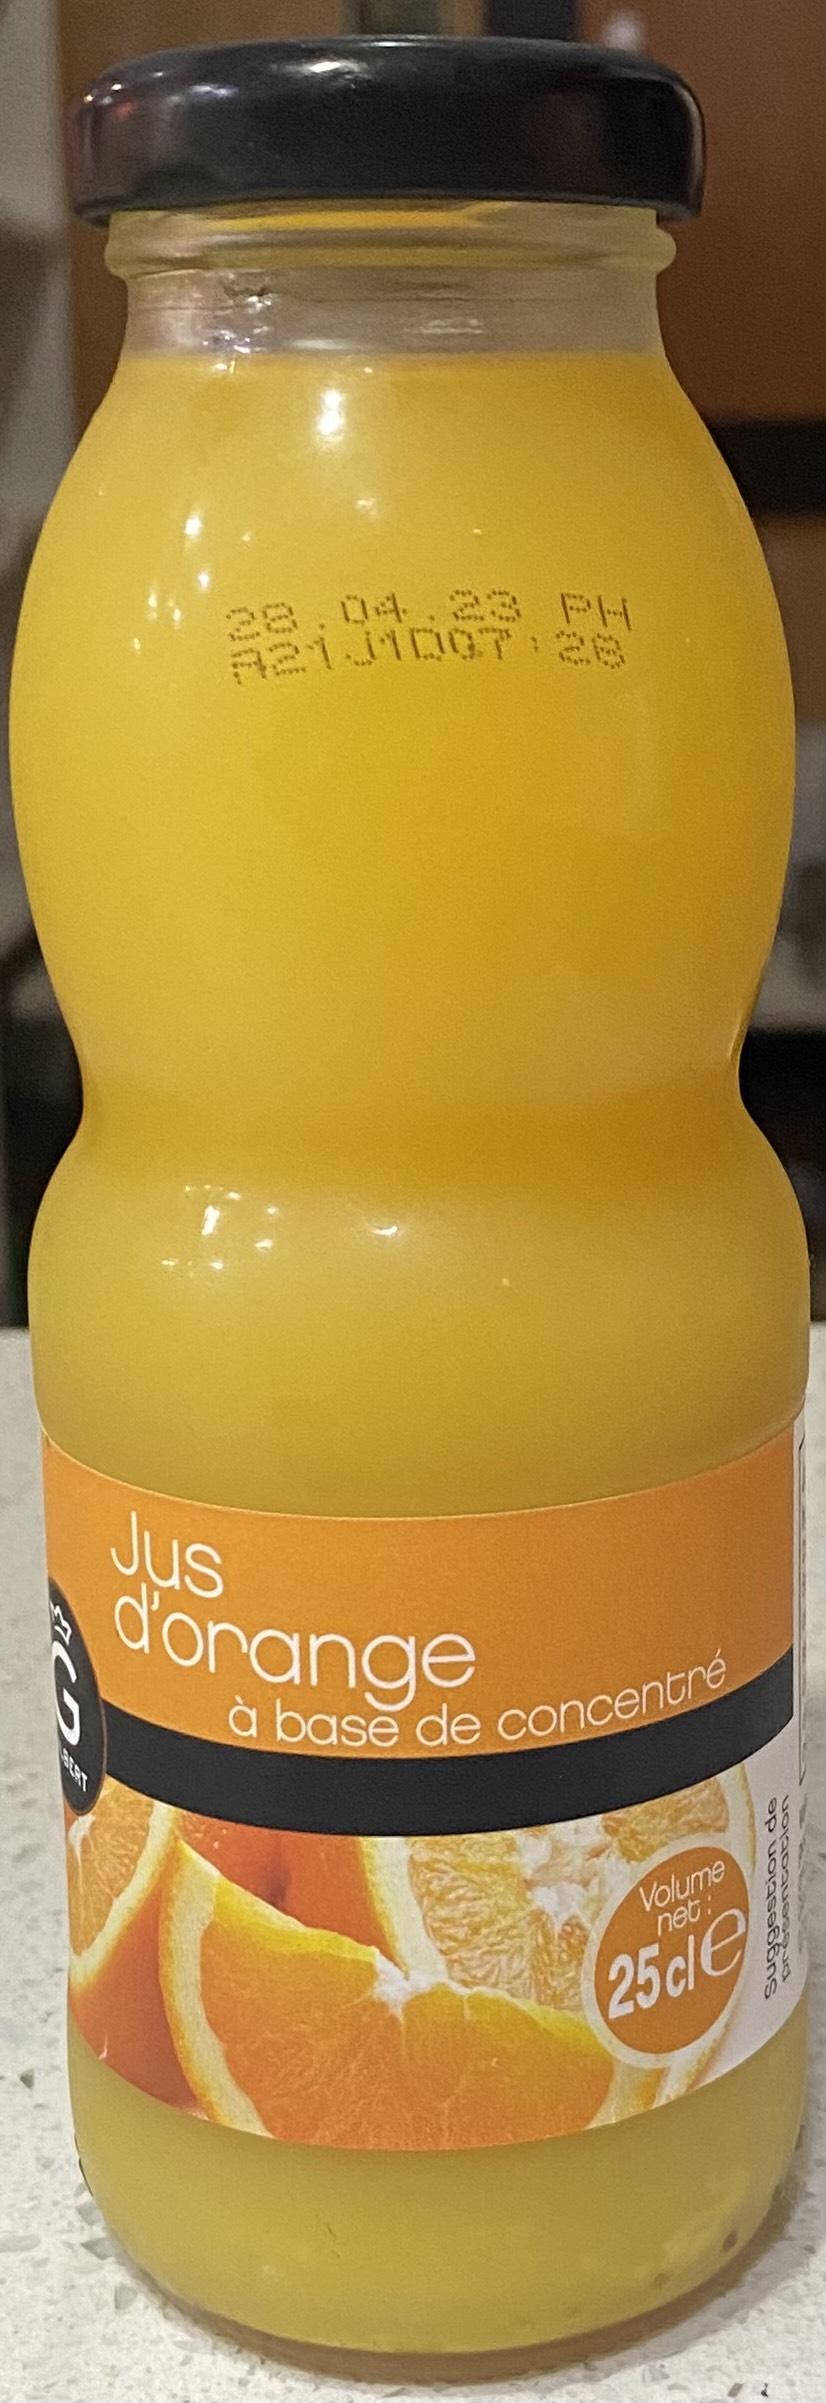 B.Jus de fruits (orange) (25cl)